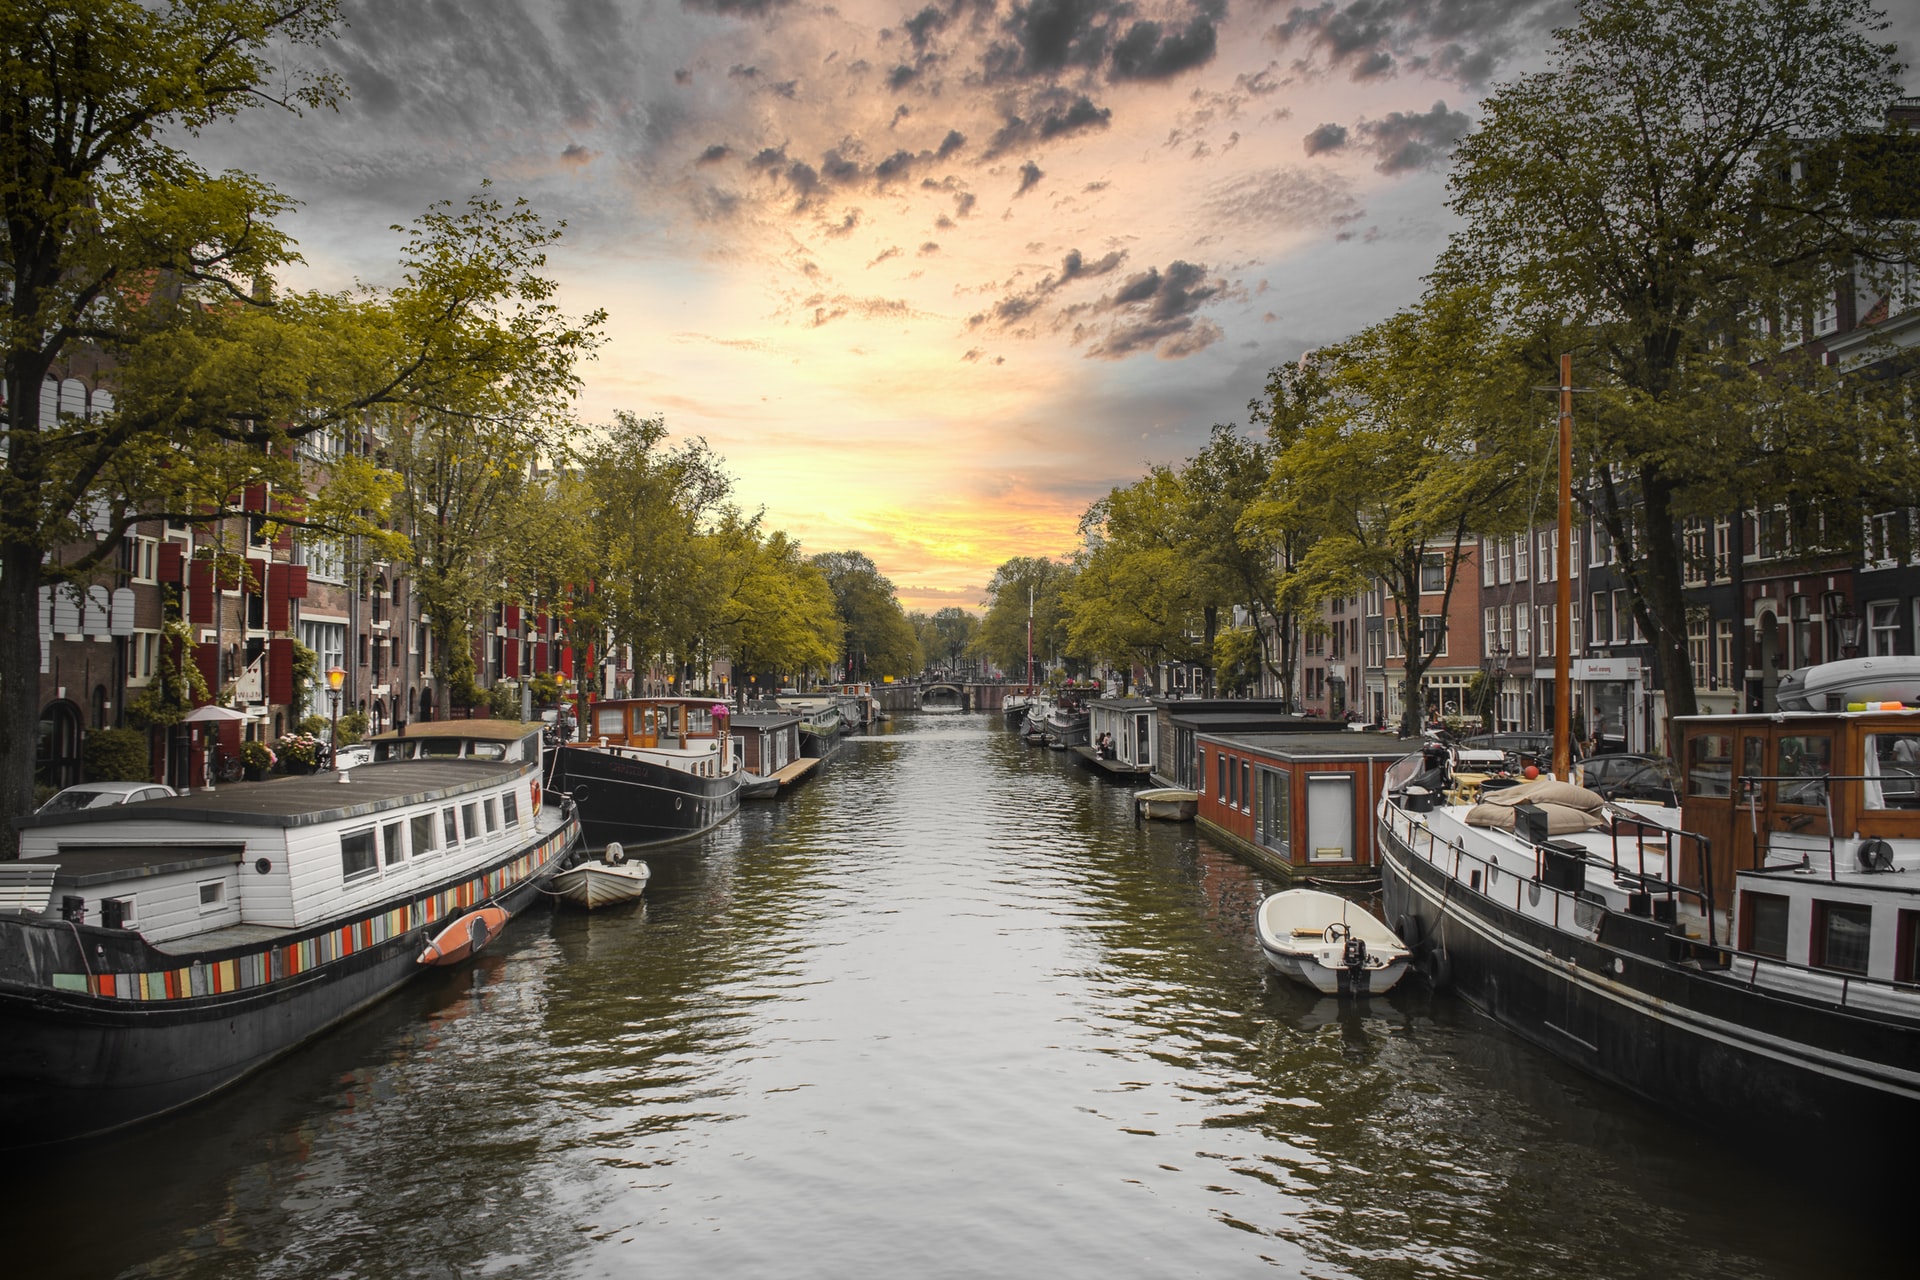 El cinturón de canales de Ámsterdam, conocido como Grachtengordel en holandés, es un área pintoresca y vibrante que bordea los cuatro canales principales de la ciudad: Singel, Herengracht, Keizersgracht y Prinsengracht